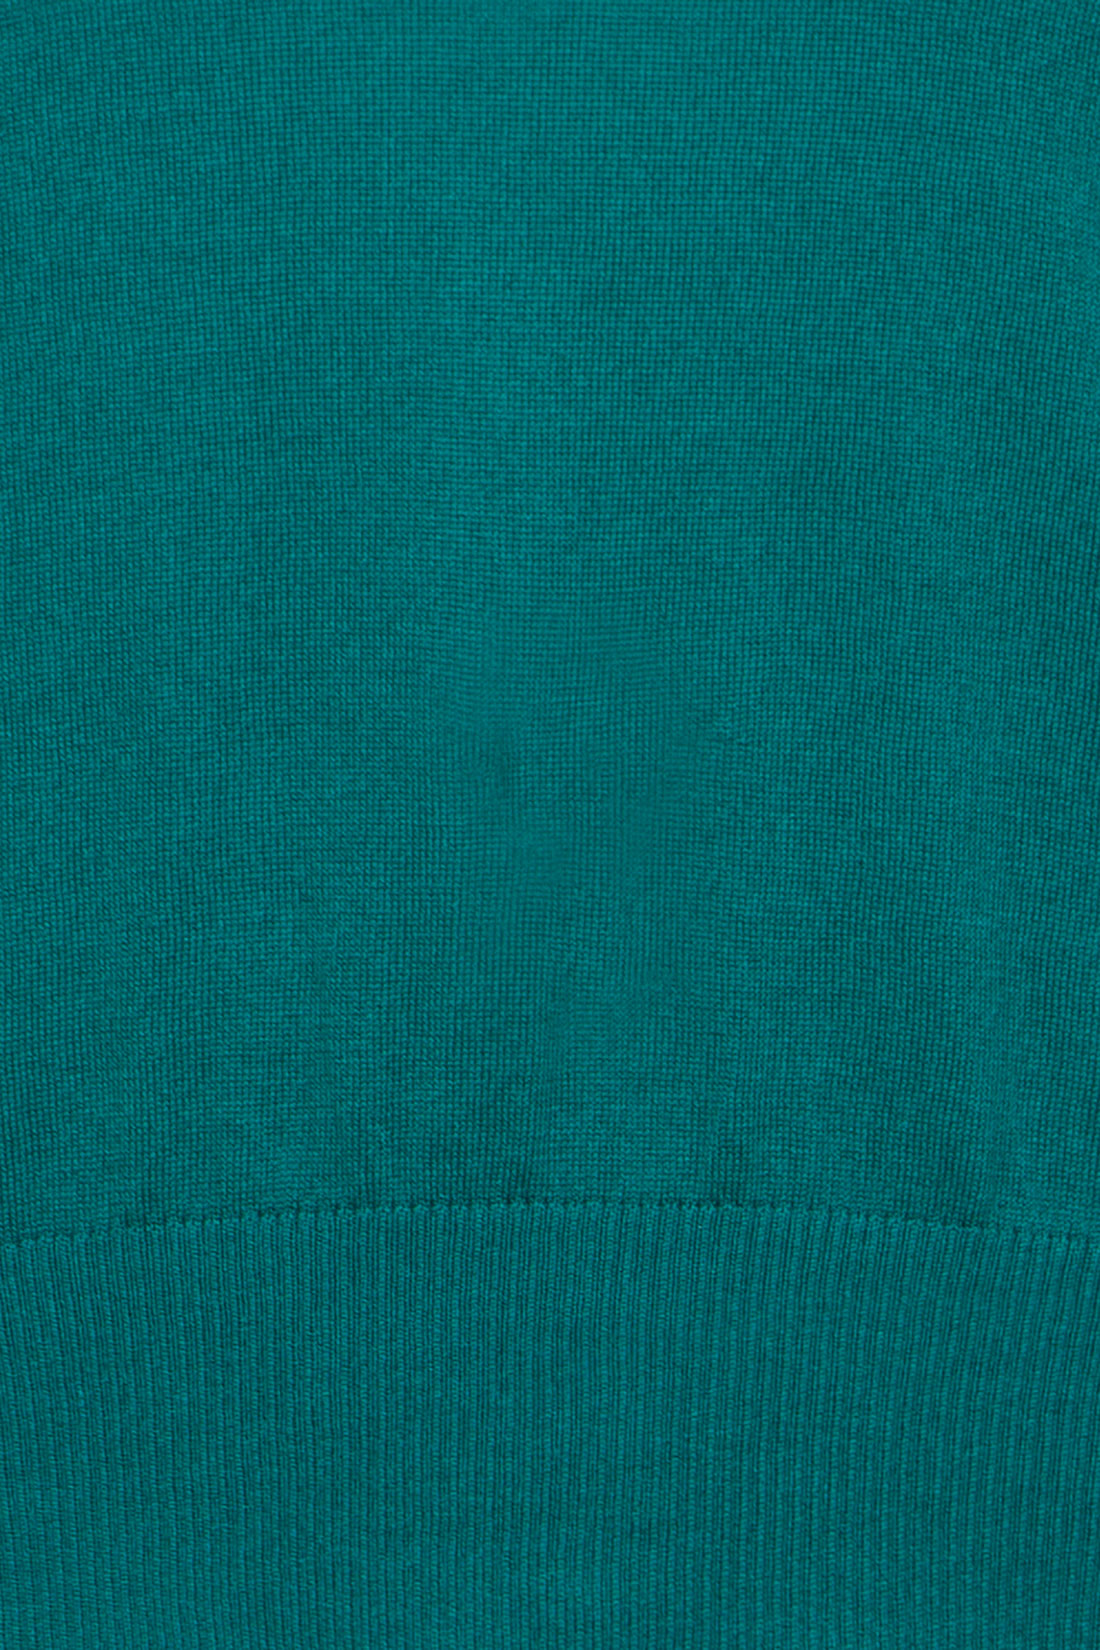 Джемпер с принтованной спинкой (арт. baon B137005), размер XXL, цвет зеленый Джемпер с принтованной спинкой (арт. baon B137005) - фото 3